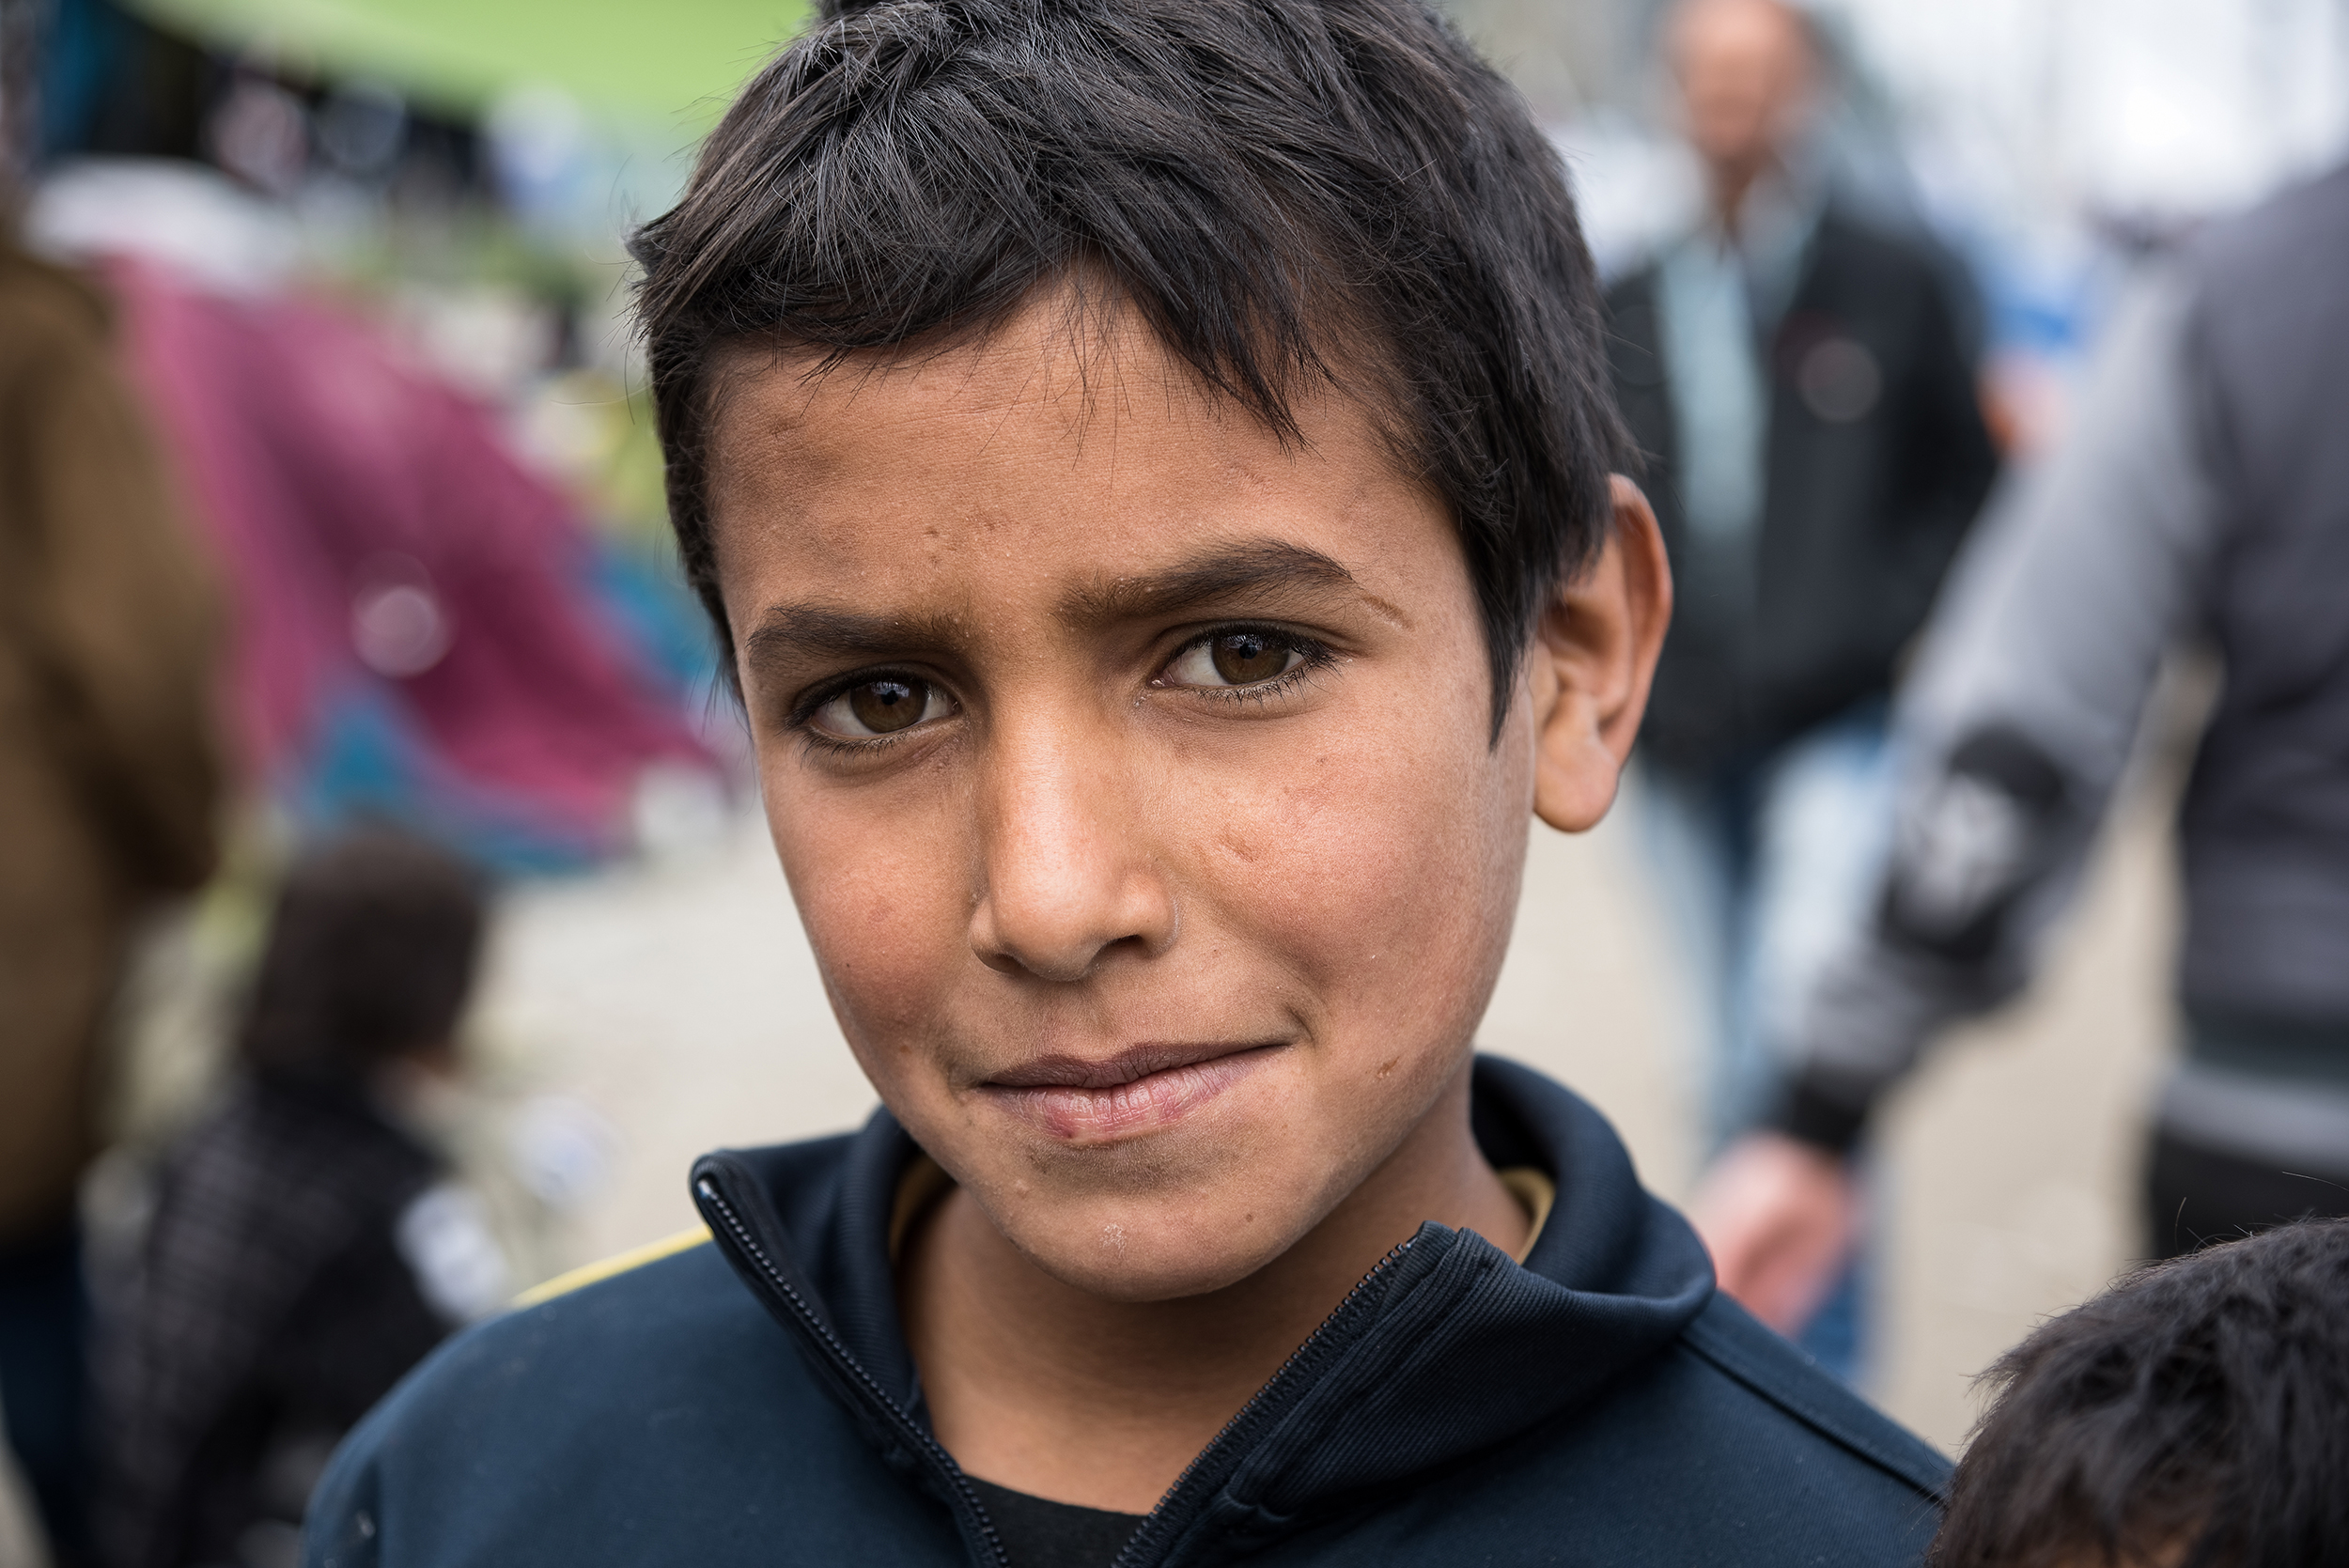 visage d'un jeune enfant réfugié accueilli en famille d'accueil